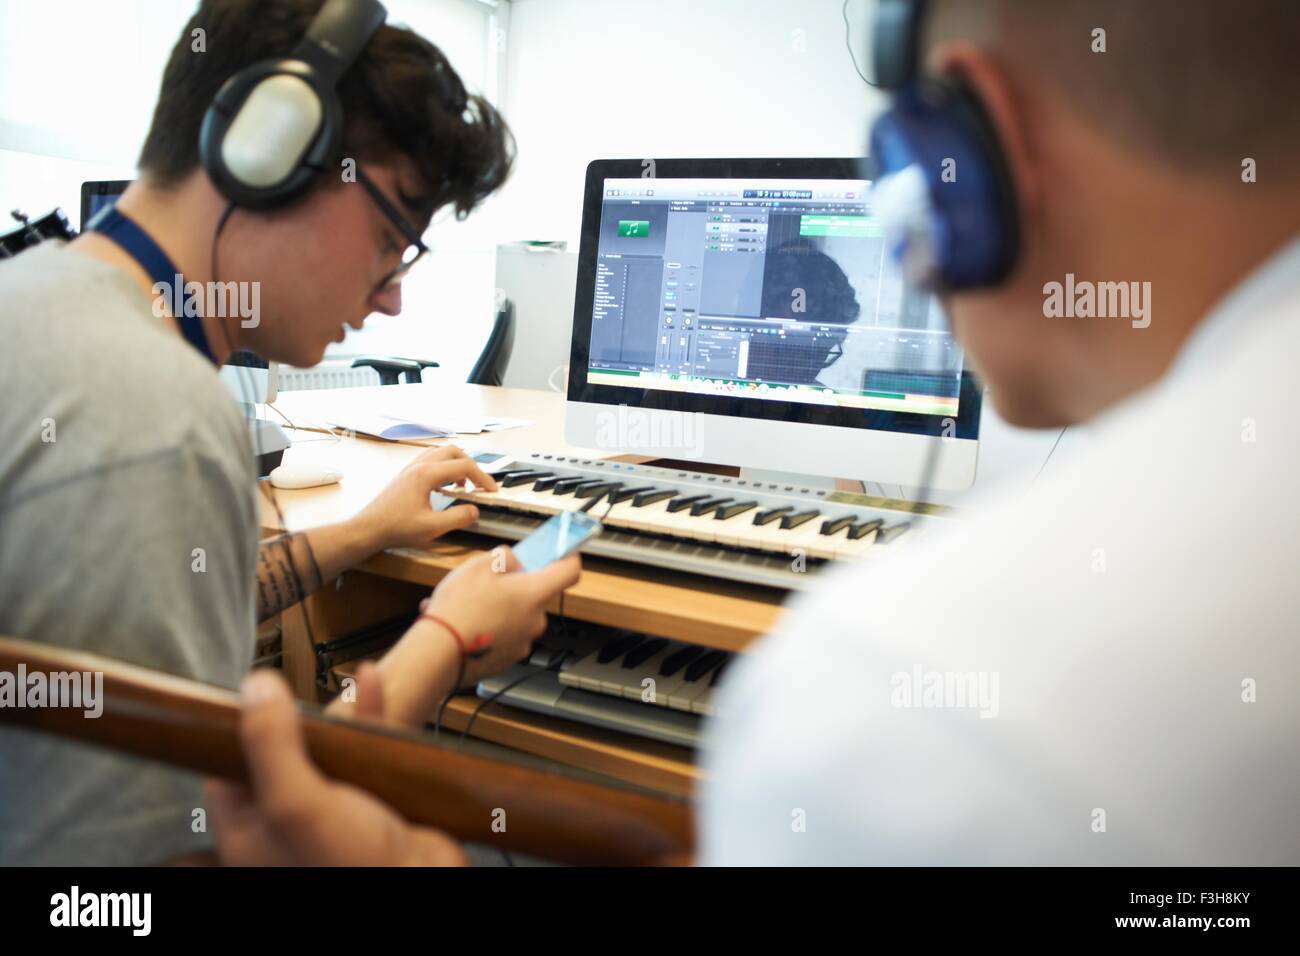 Über Schulter Blick der jungen Männer tragen von Kopfhörern mit Recording-Equipment, blickte auf smartphone Stockfoto